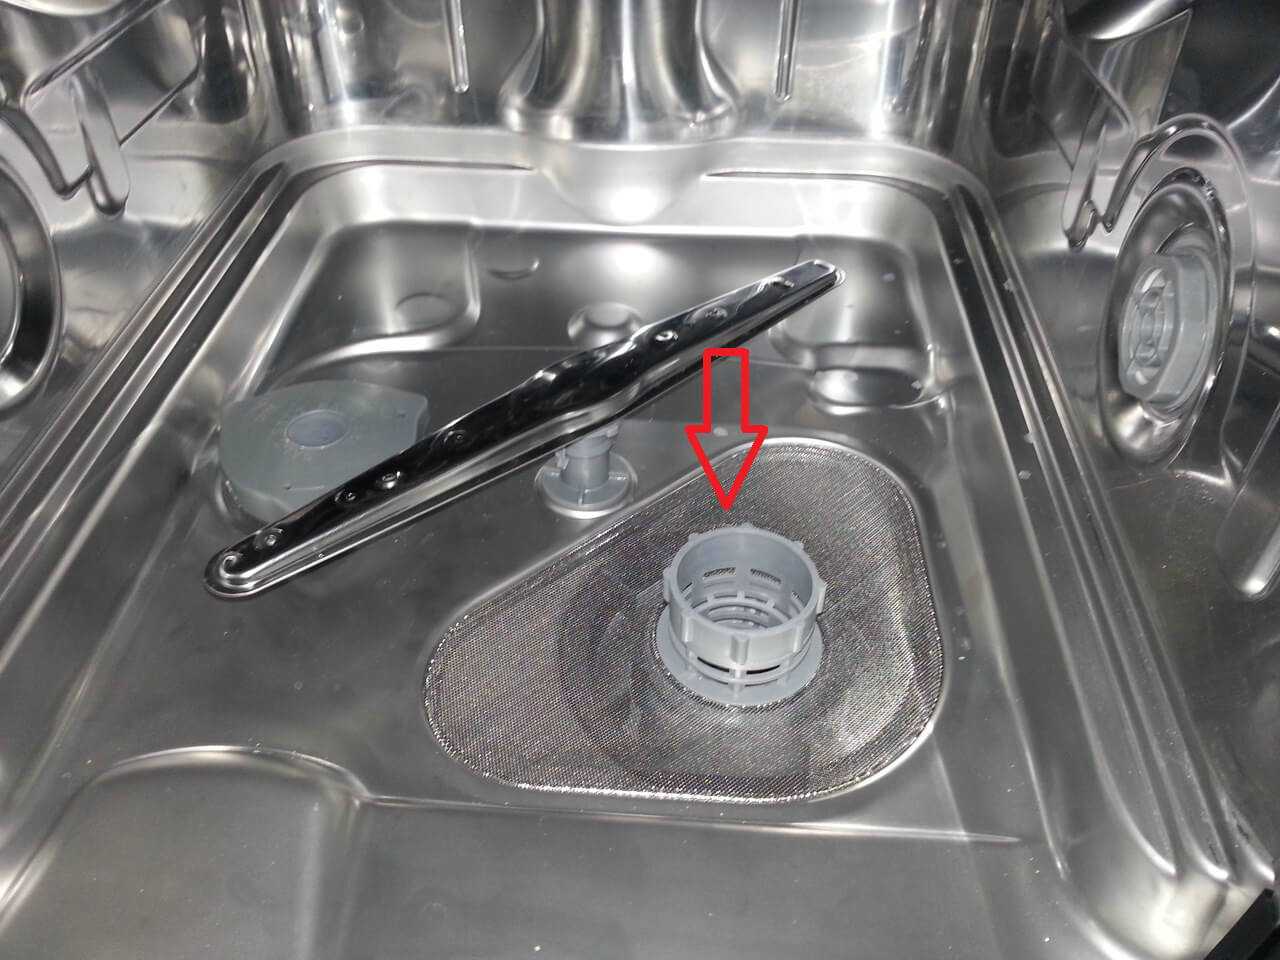 Посудомоечная машина плохо моет посуду: причины, решение проблемы